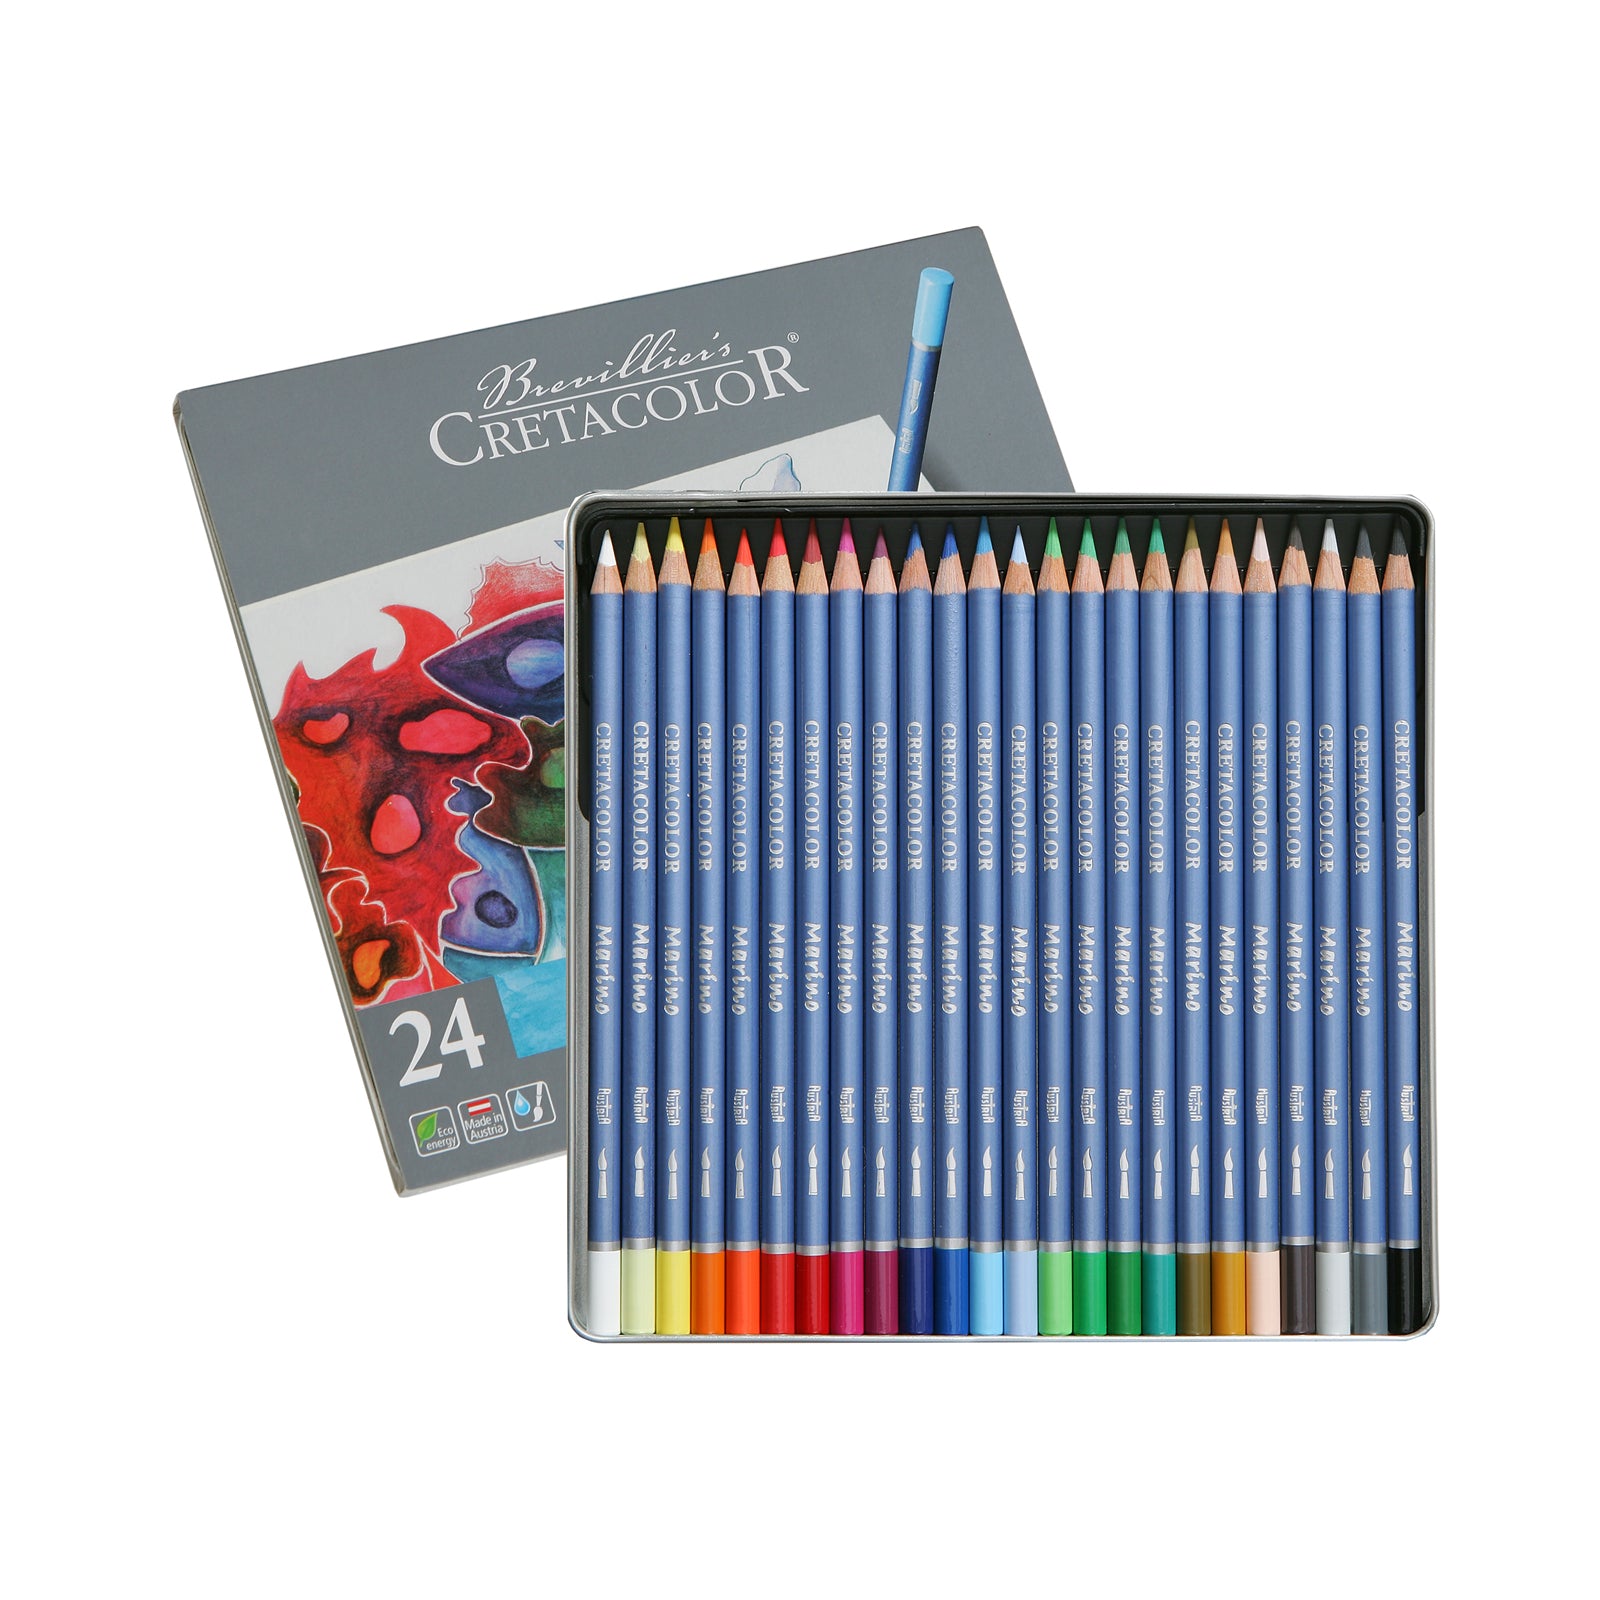 Cretacolor - Marino Aquarelle Pencils 24 Set